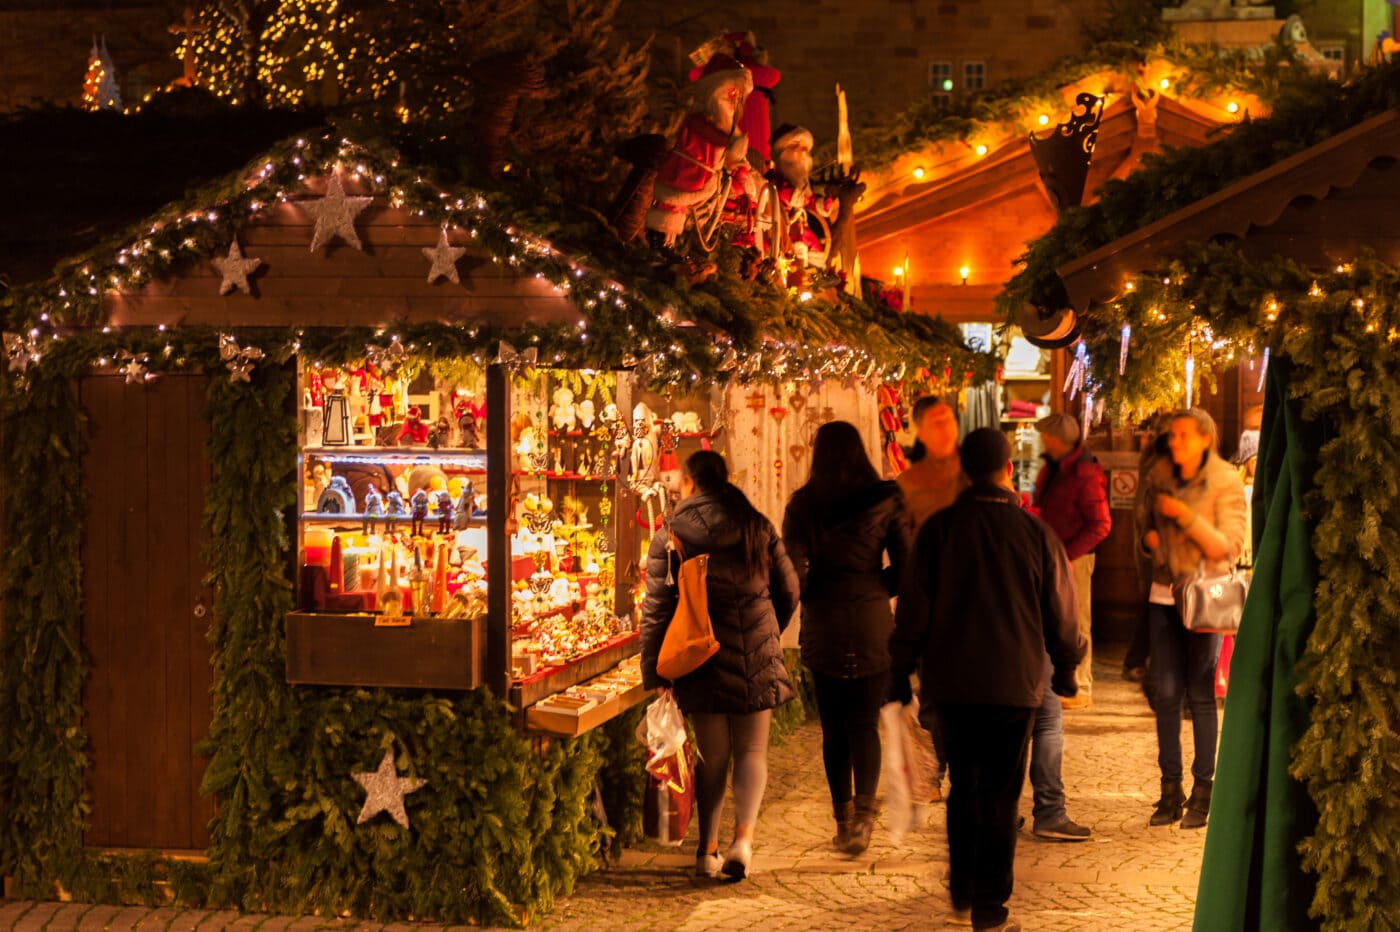 Vögeligärtli Luzern: Dieses Jahr gibt's keinen Weihnachtsevent mehr